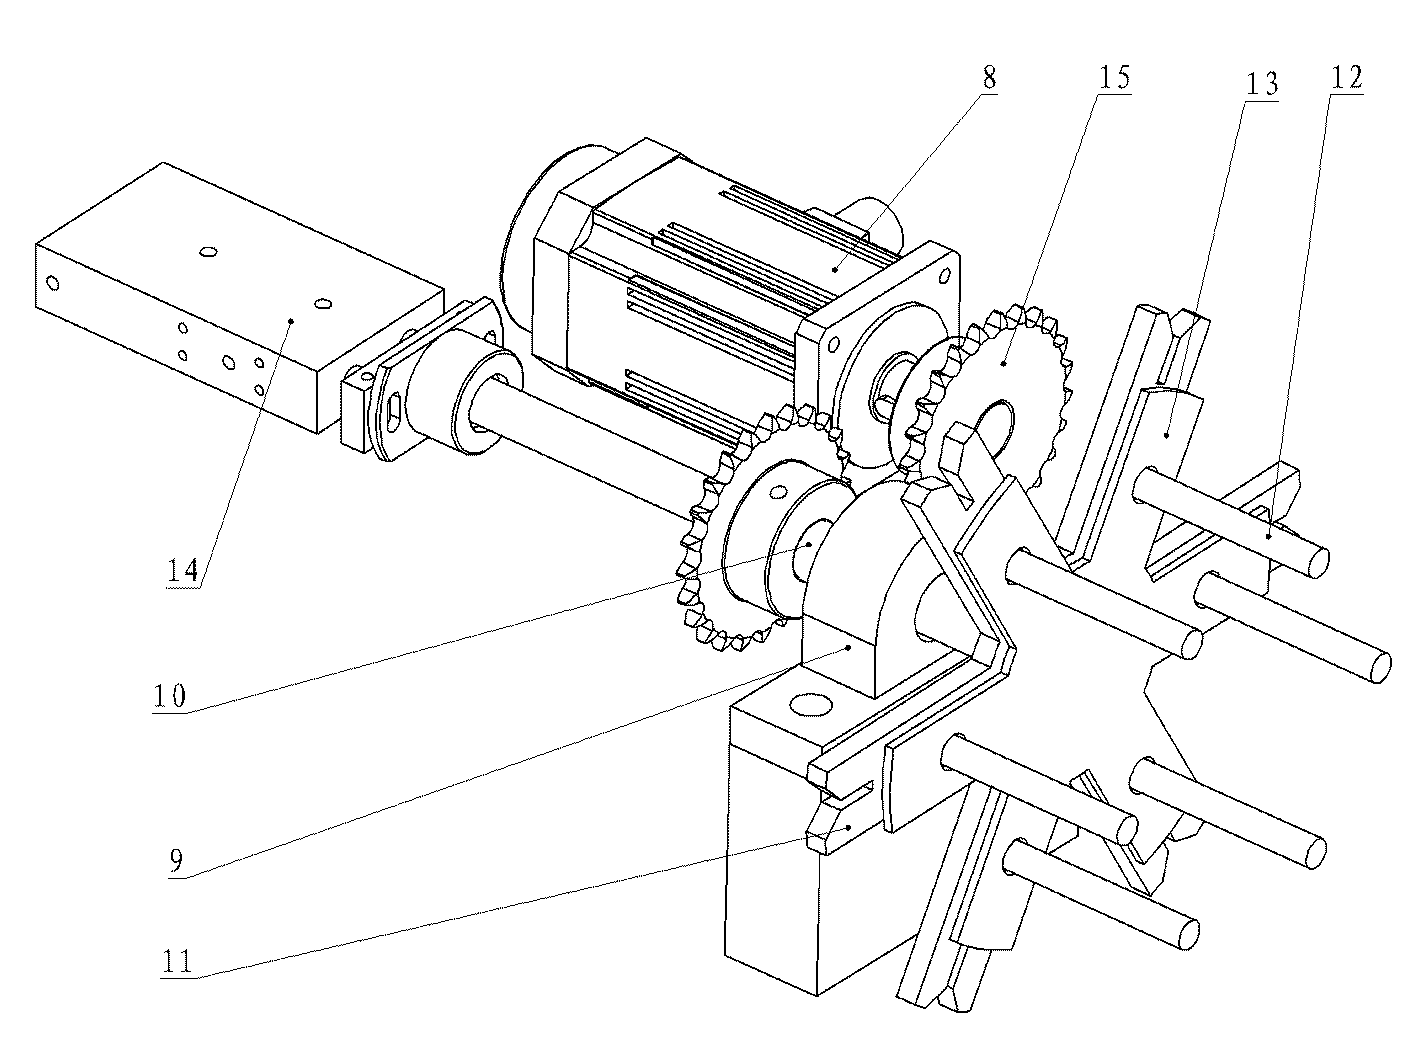 Full-automatic nonel tube machine